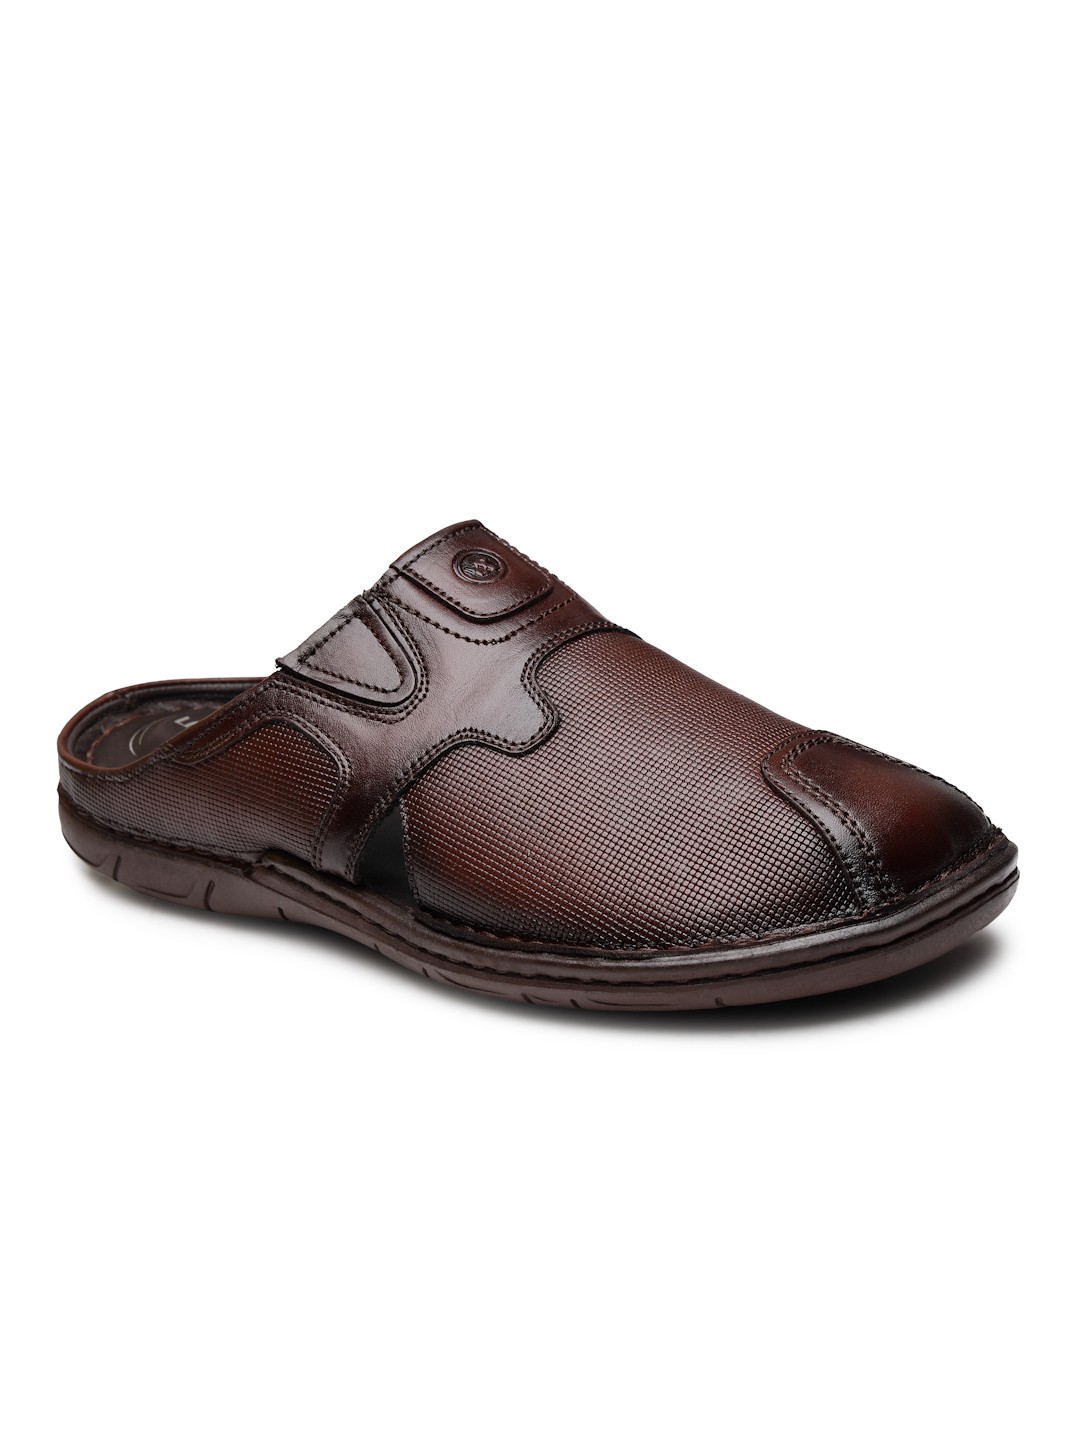 Buy Von Wellx Germany Comfort Men's Brown Slippers Arlo Online in Chandigarh